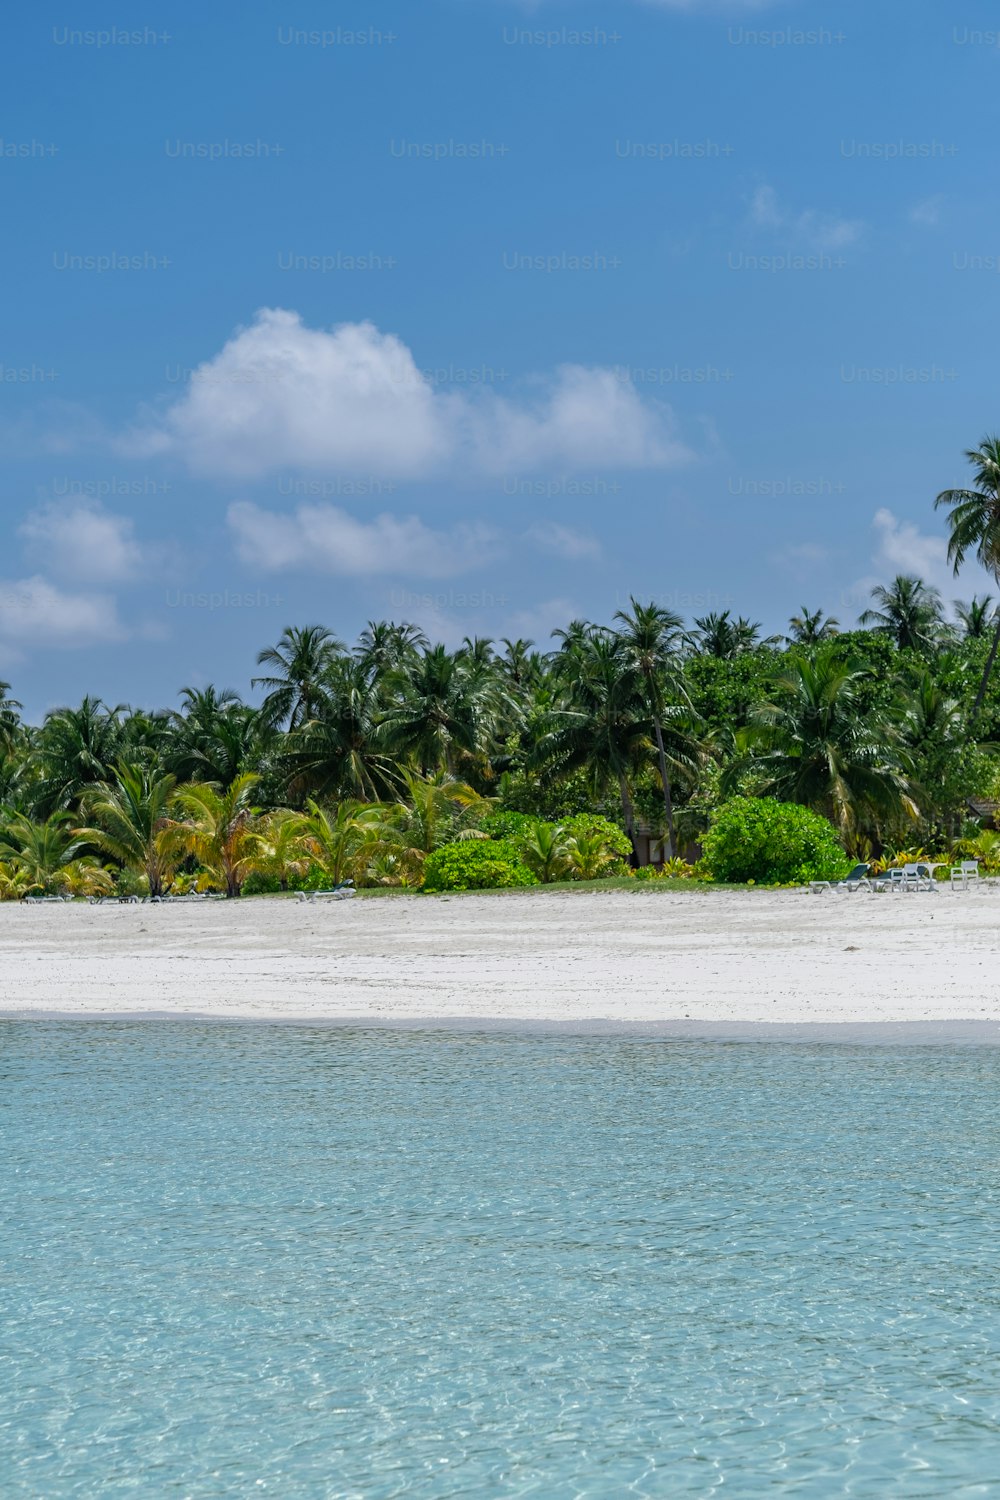 una playa de arena con palmeras y agua azul